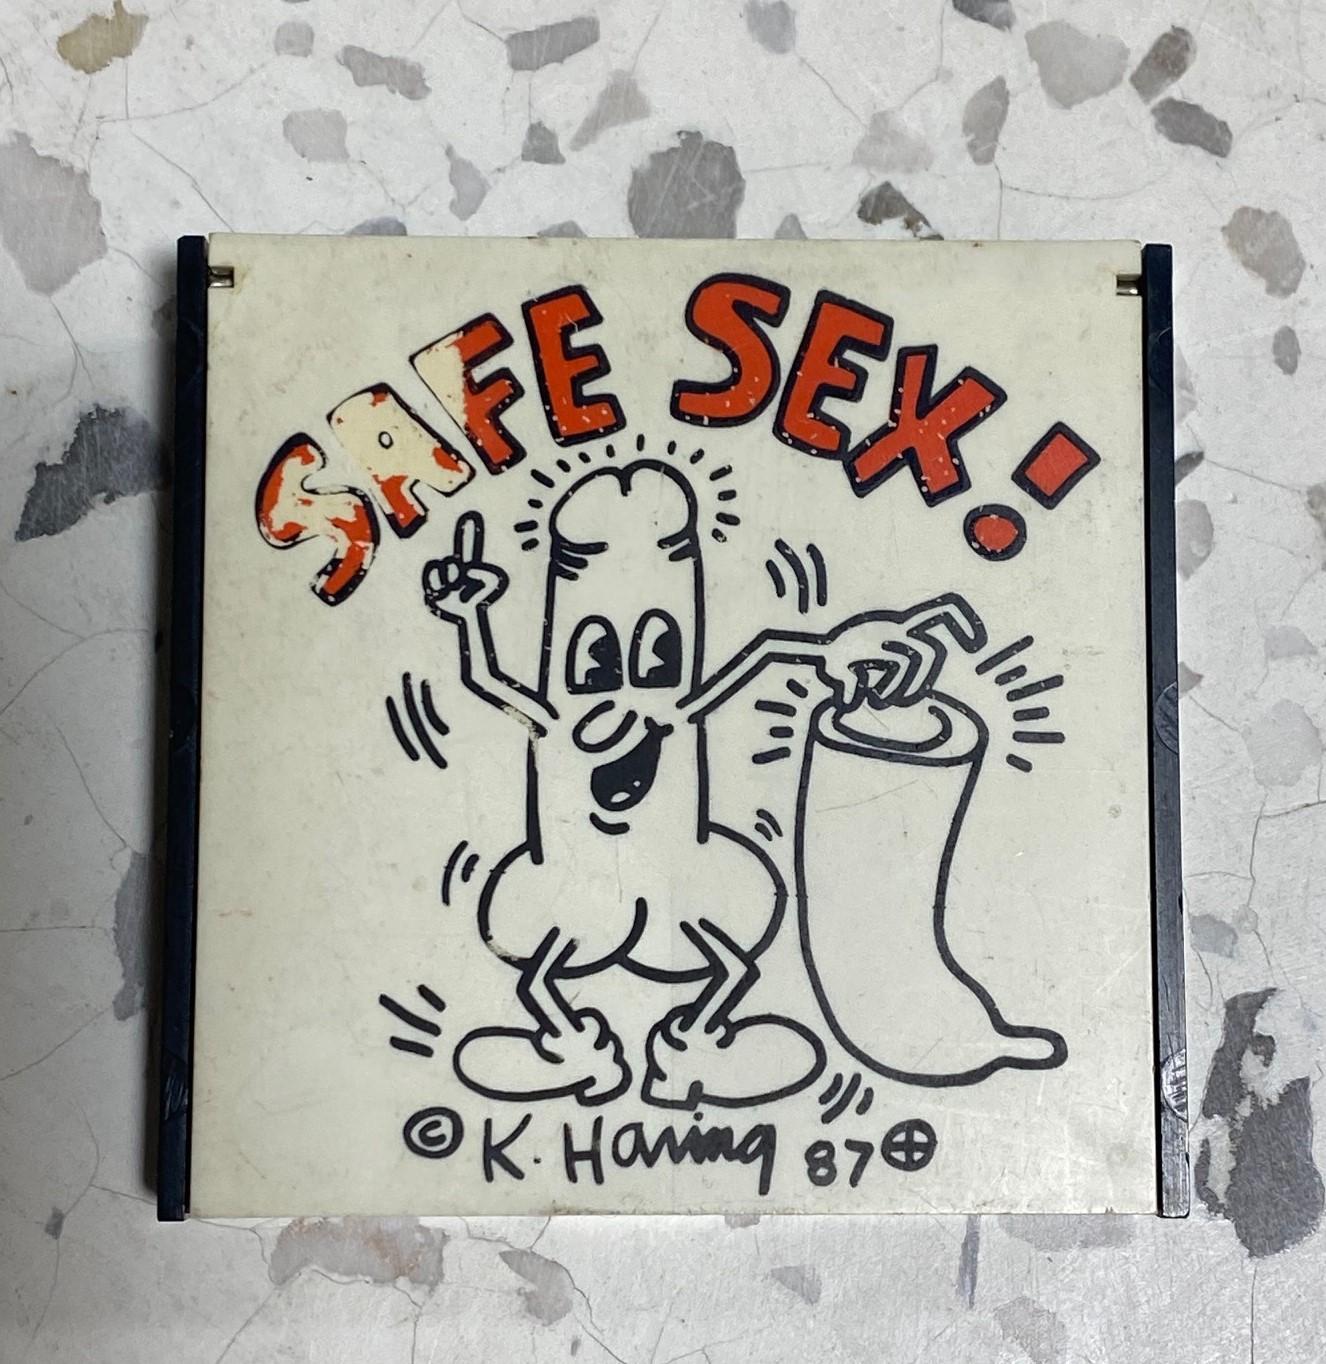 A rare Keith Haring/ New York City Pop Shop original 